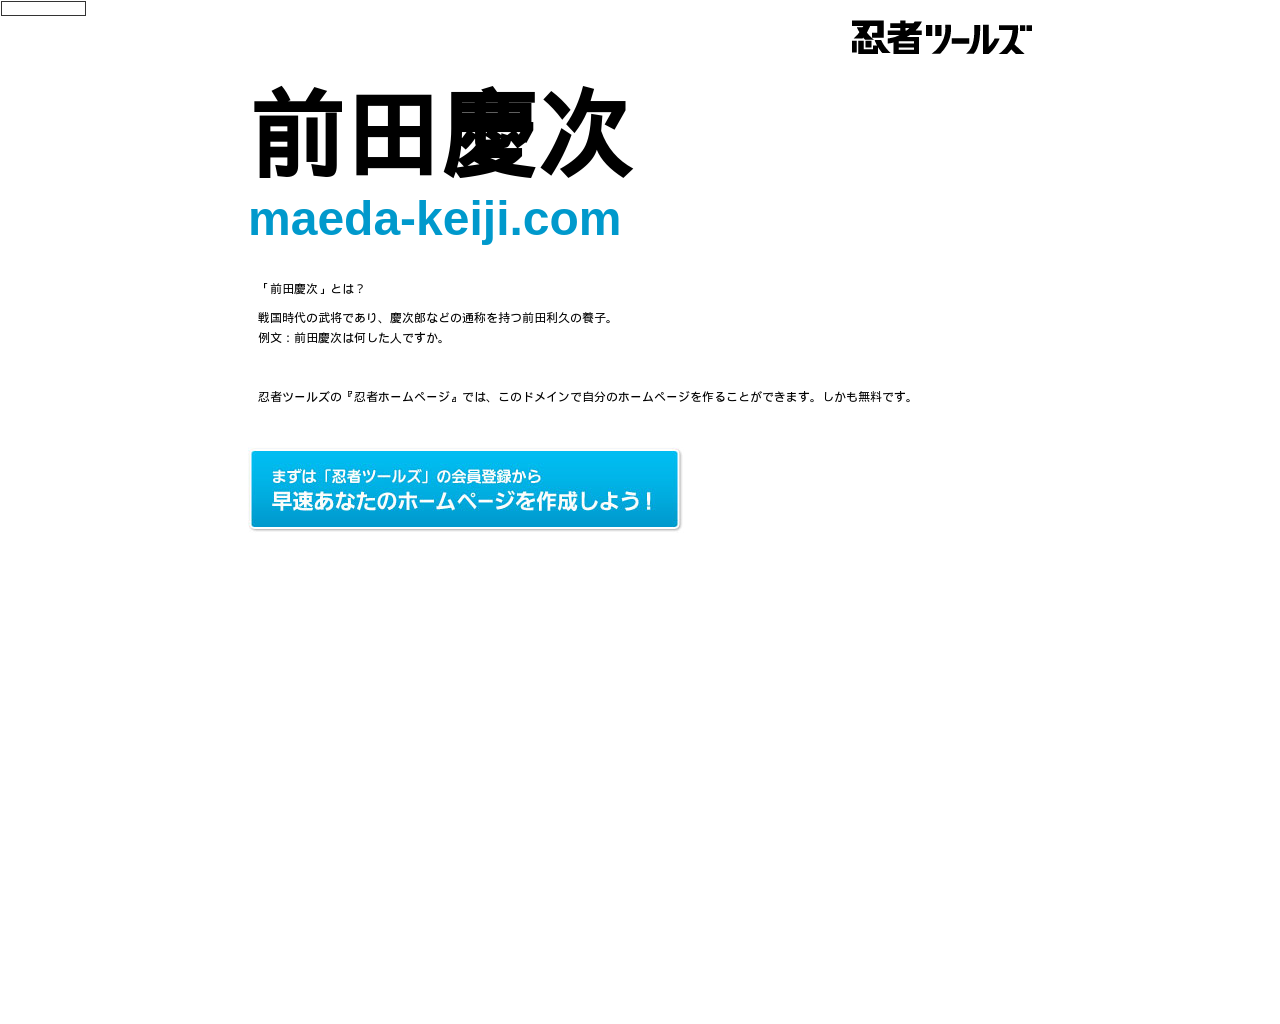 maeda-keiji.com